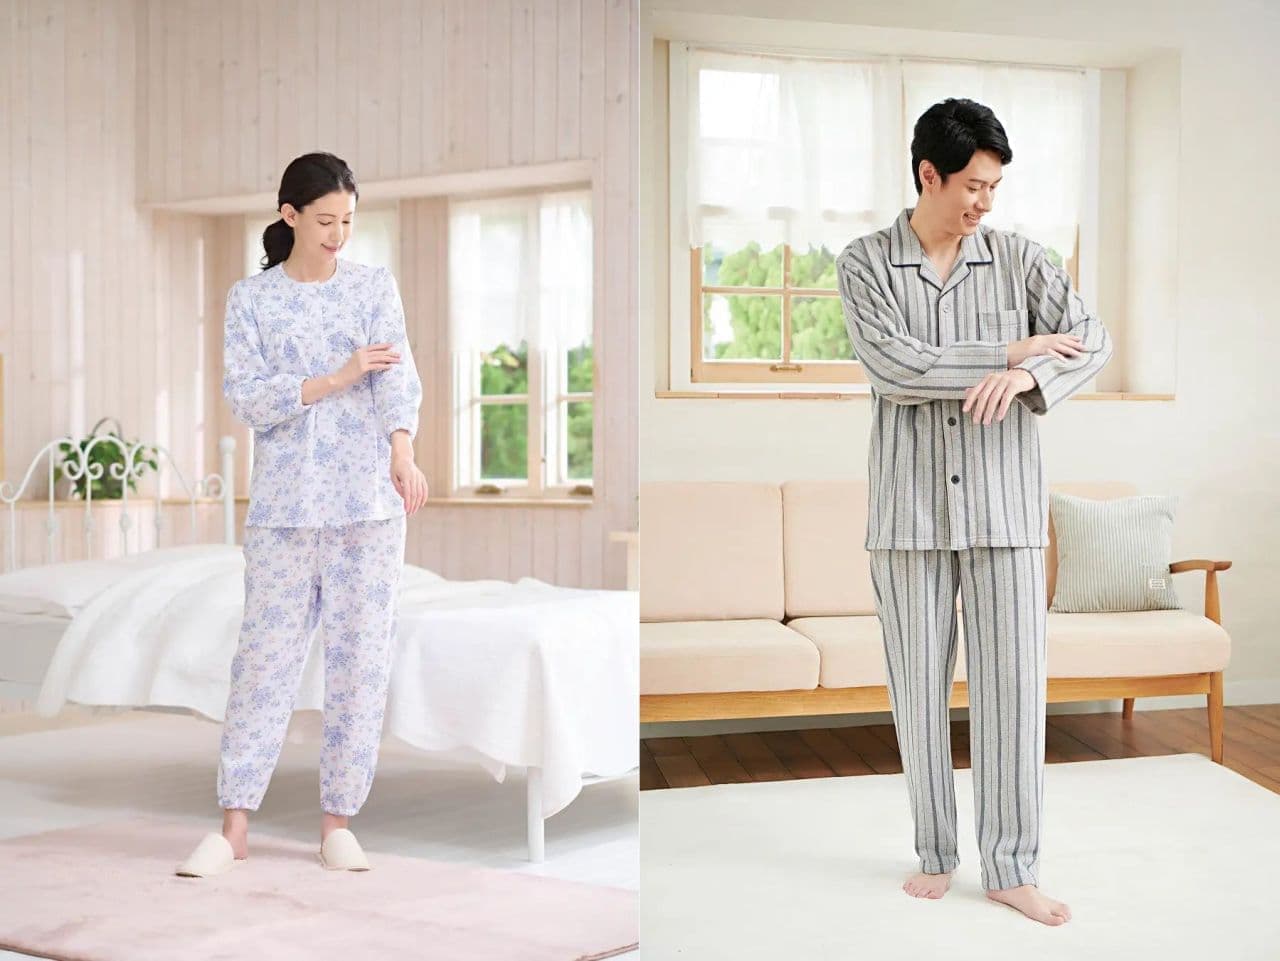 Shimamura "Warm Ladies' and Men's Pajamas